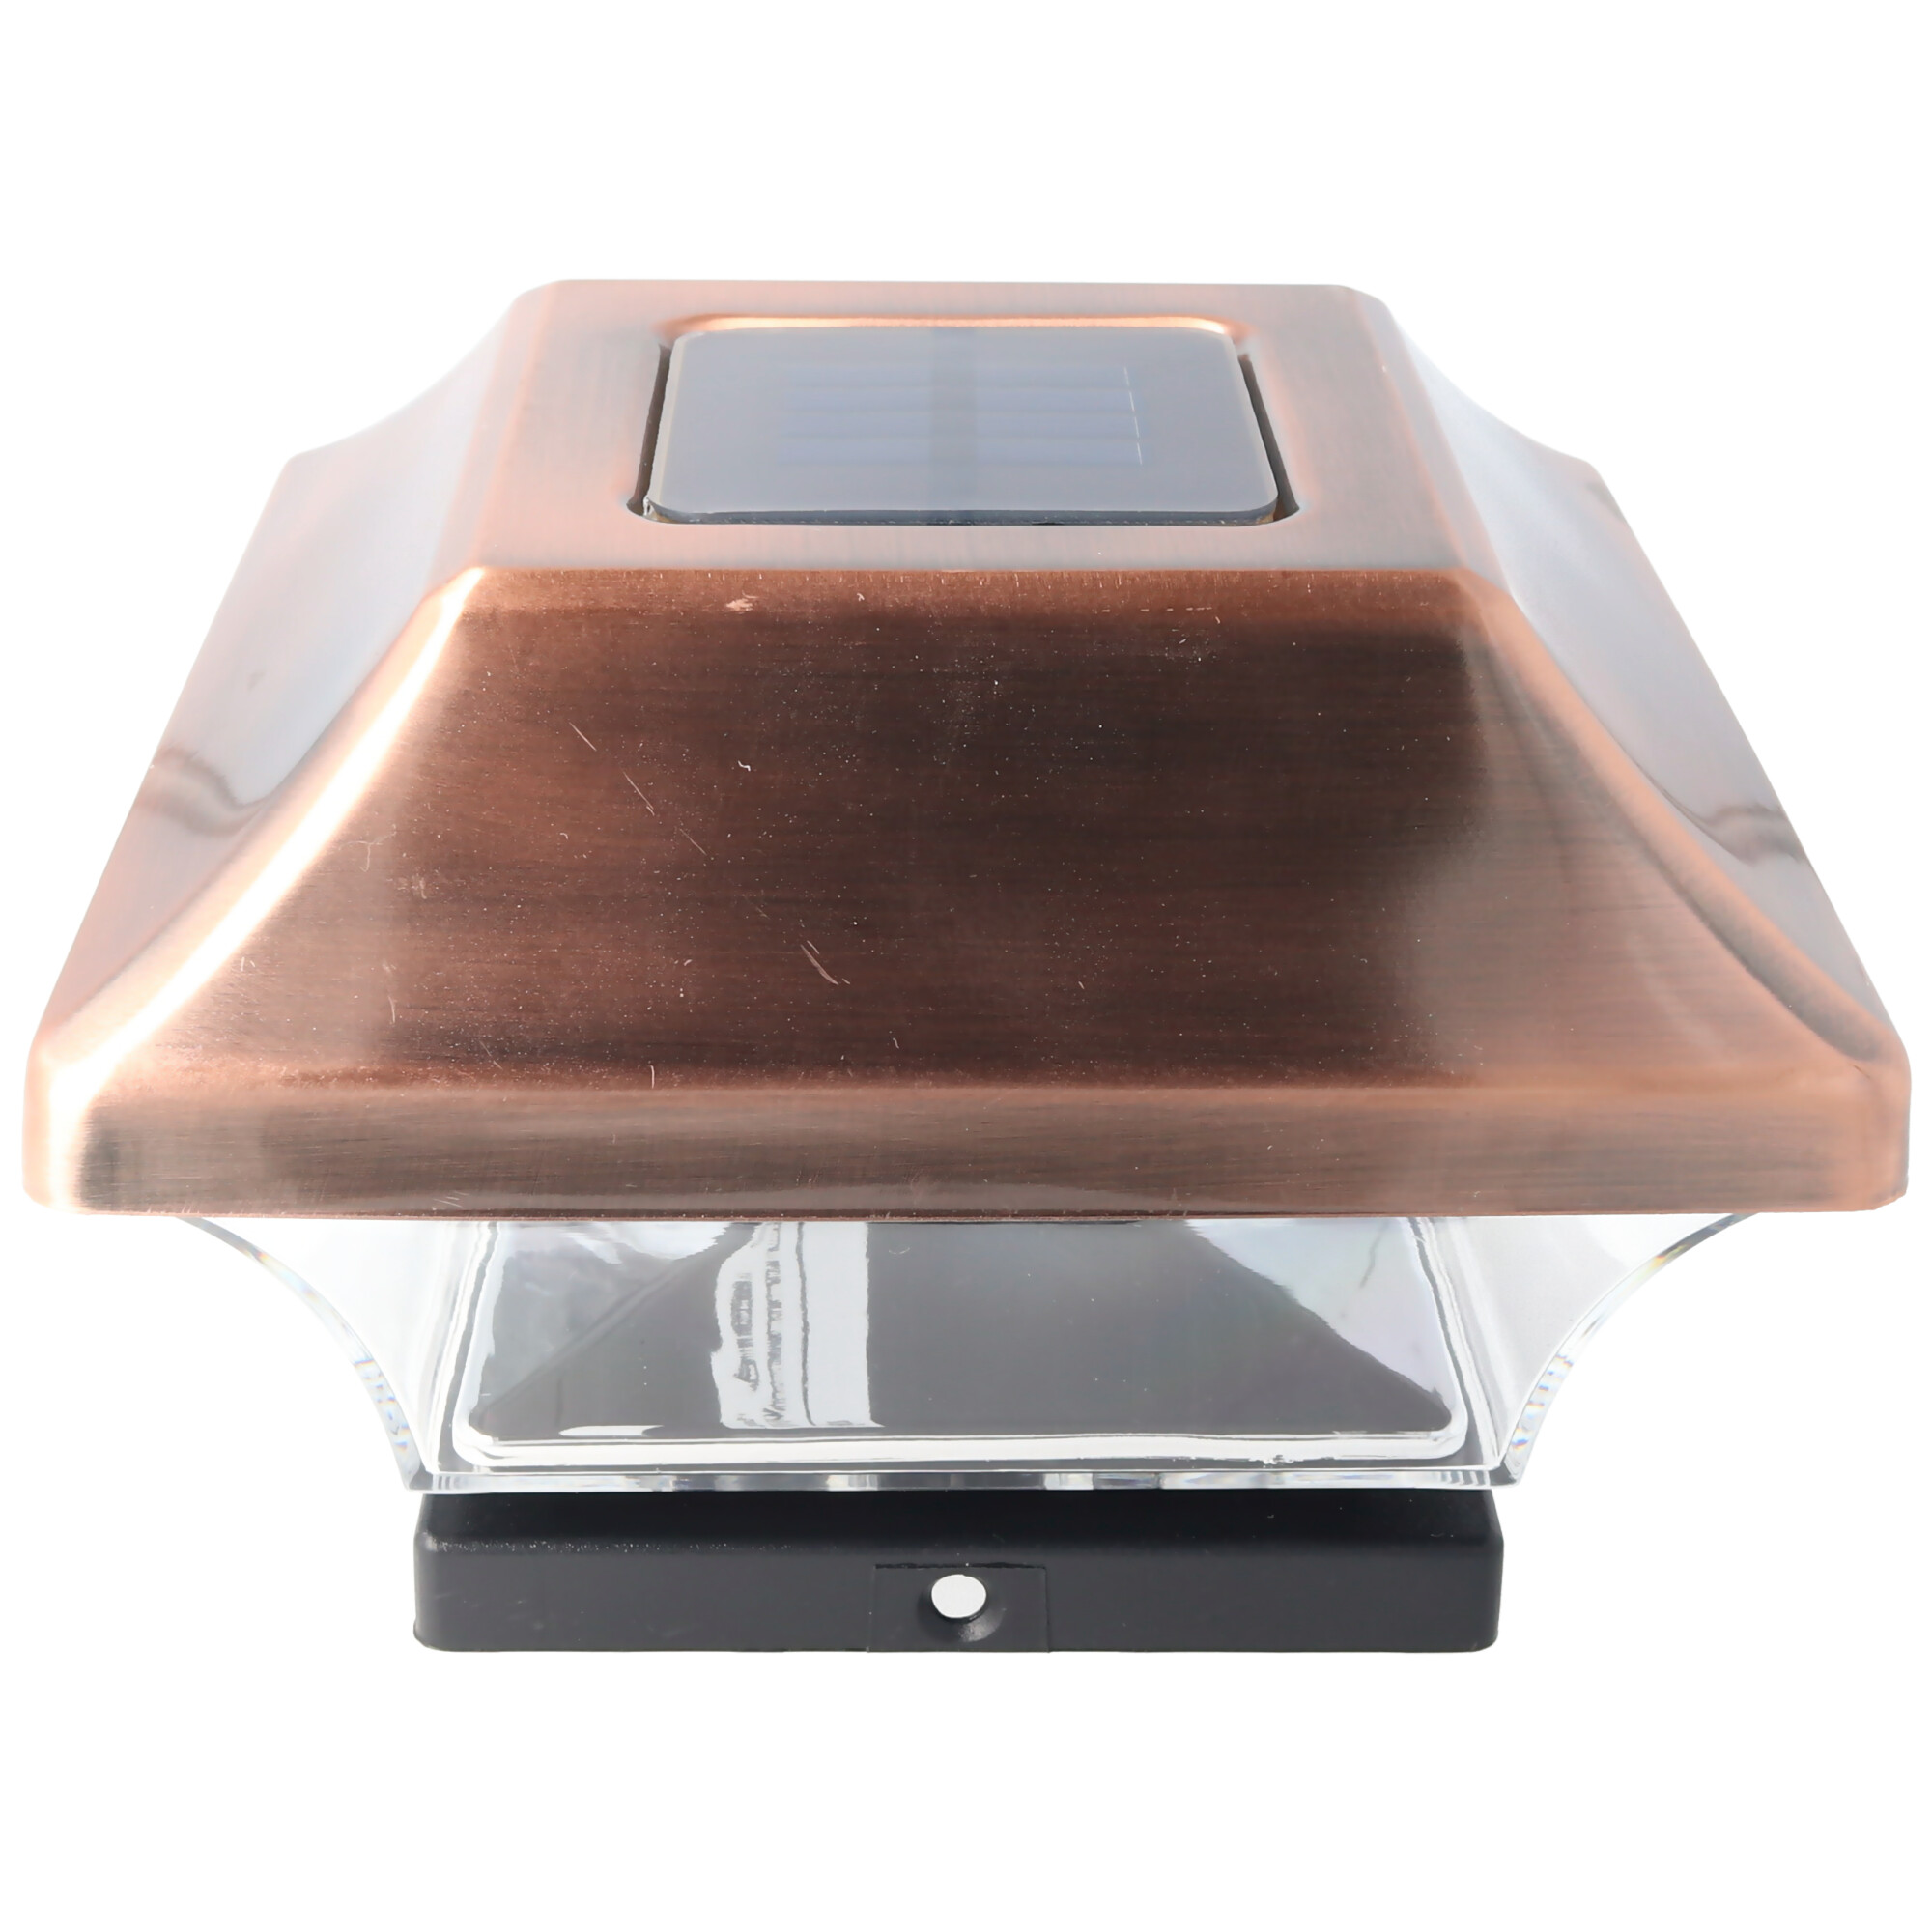 Zaunpfostenleuchte Solar LED Leuchte für Zaunpfähle, Garten Pfostenkappen, Zaunpfosten GL067COP mit 2 Adaptern in Kupfer Design und Kunststoff